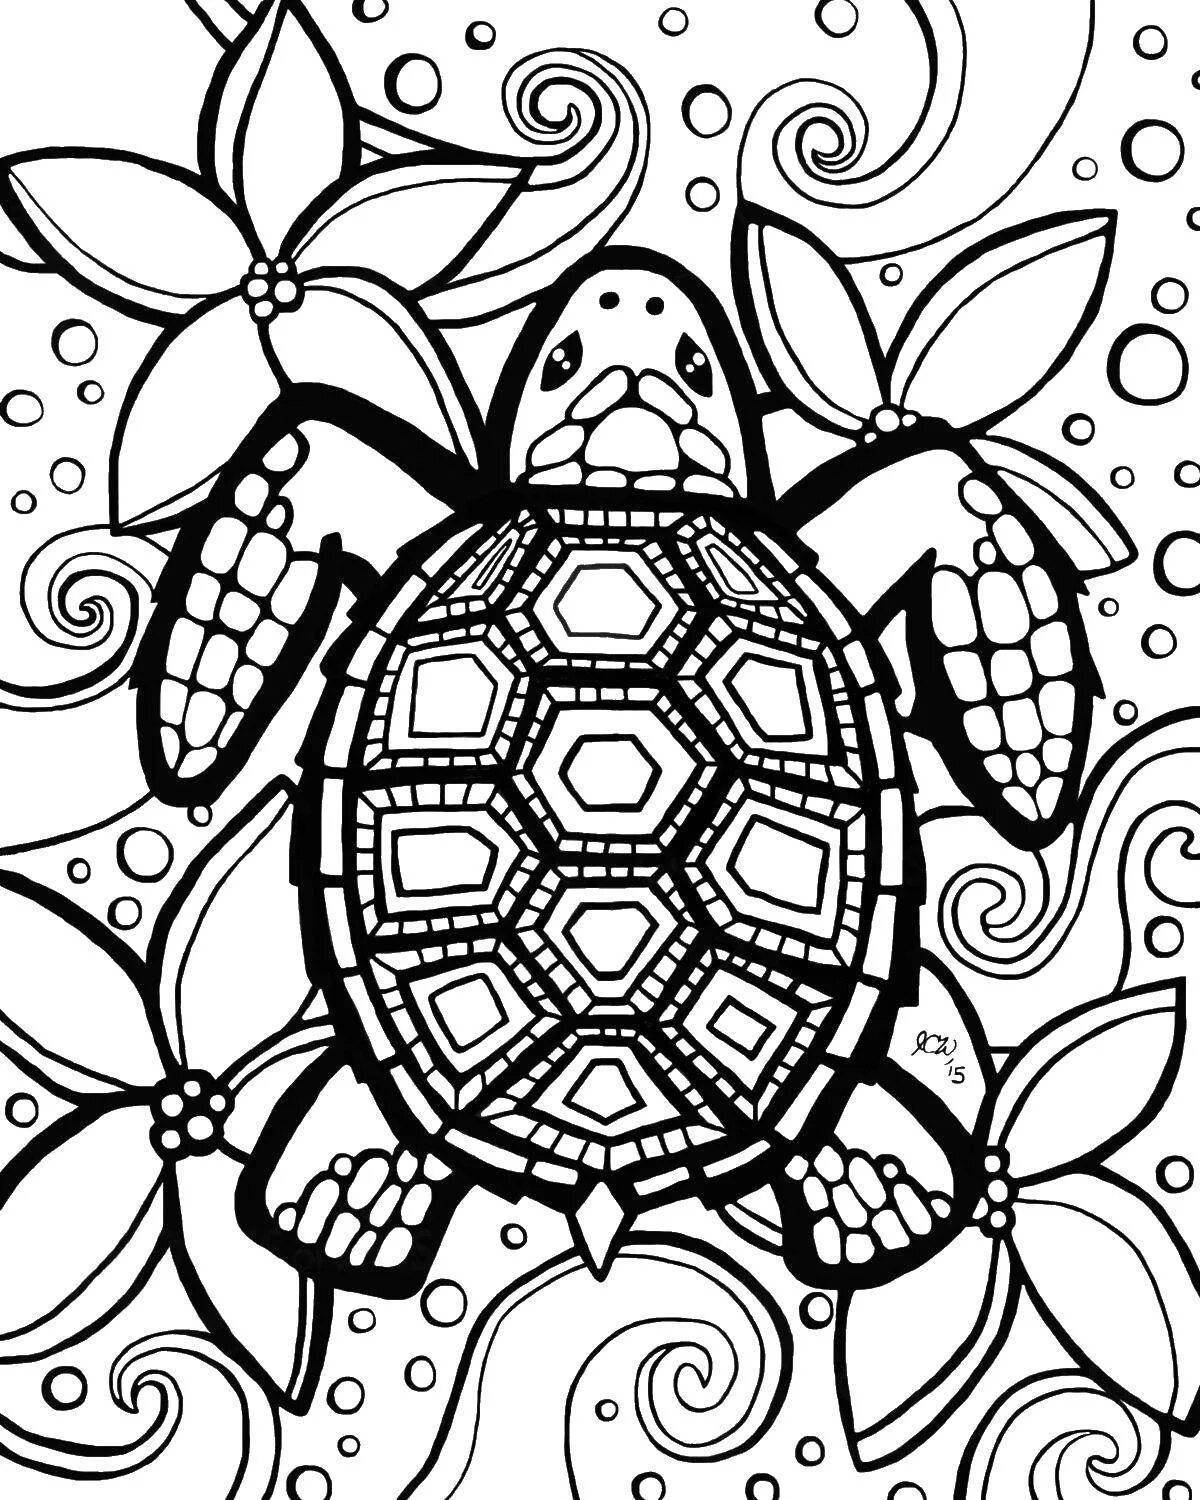 Fun coloring turtle